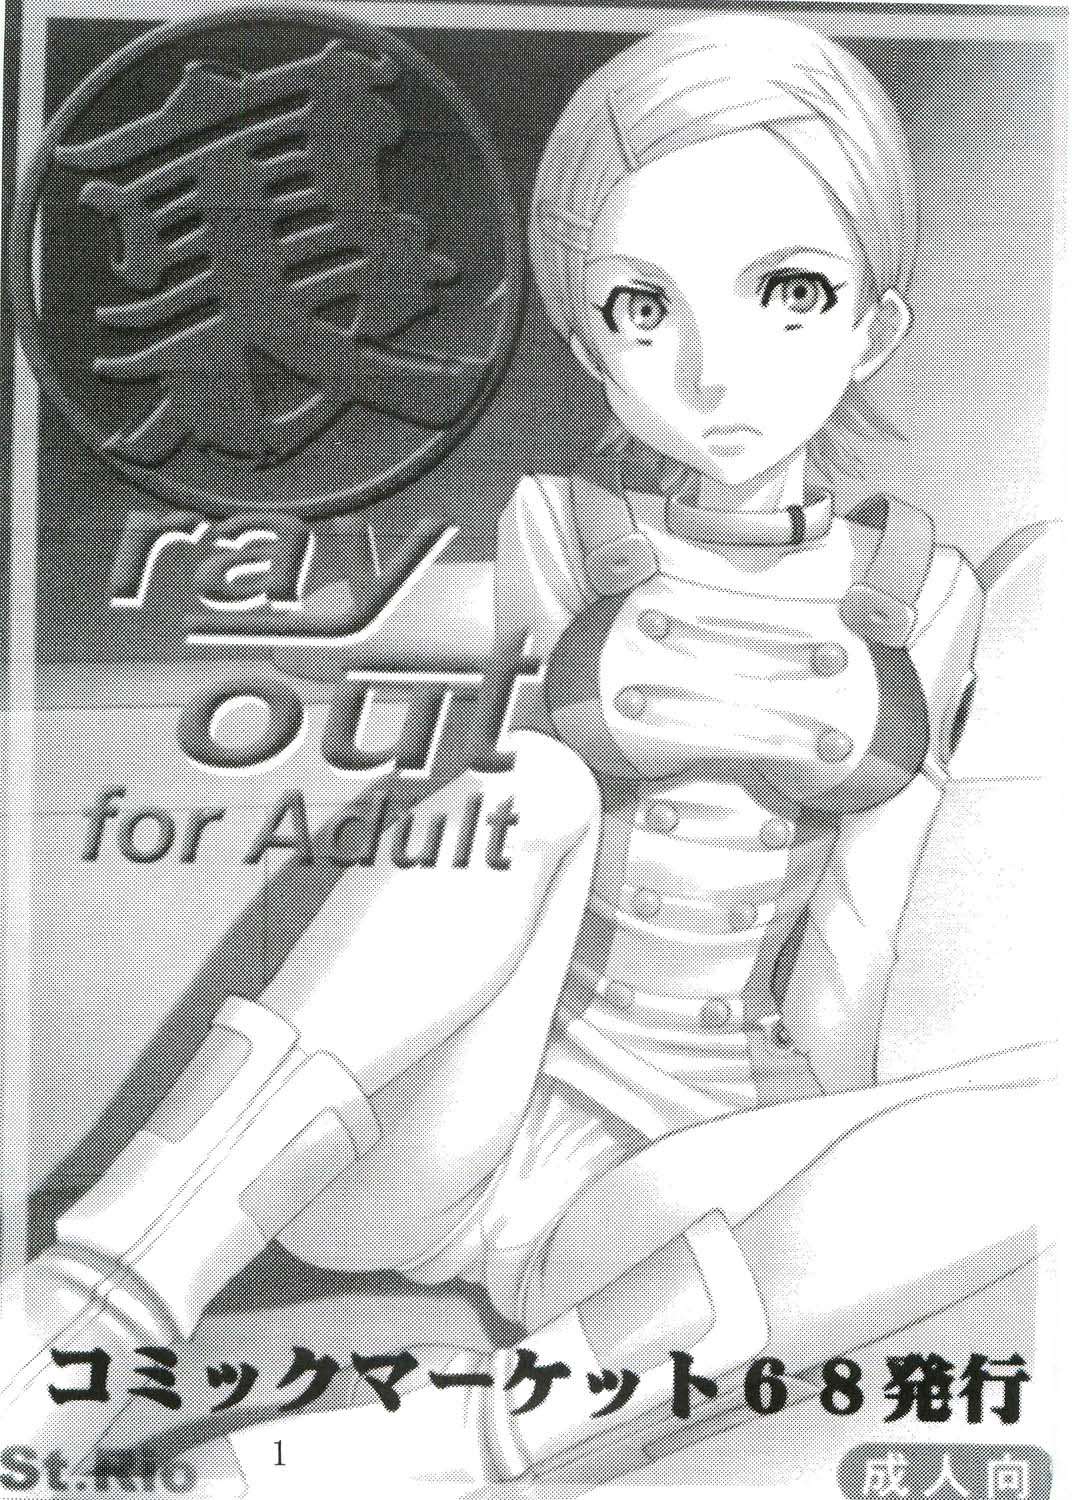 [St. Rio (Kitty, Kouenji Rei)] Ura ray-out (Eureka seveN) page 2 full